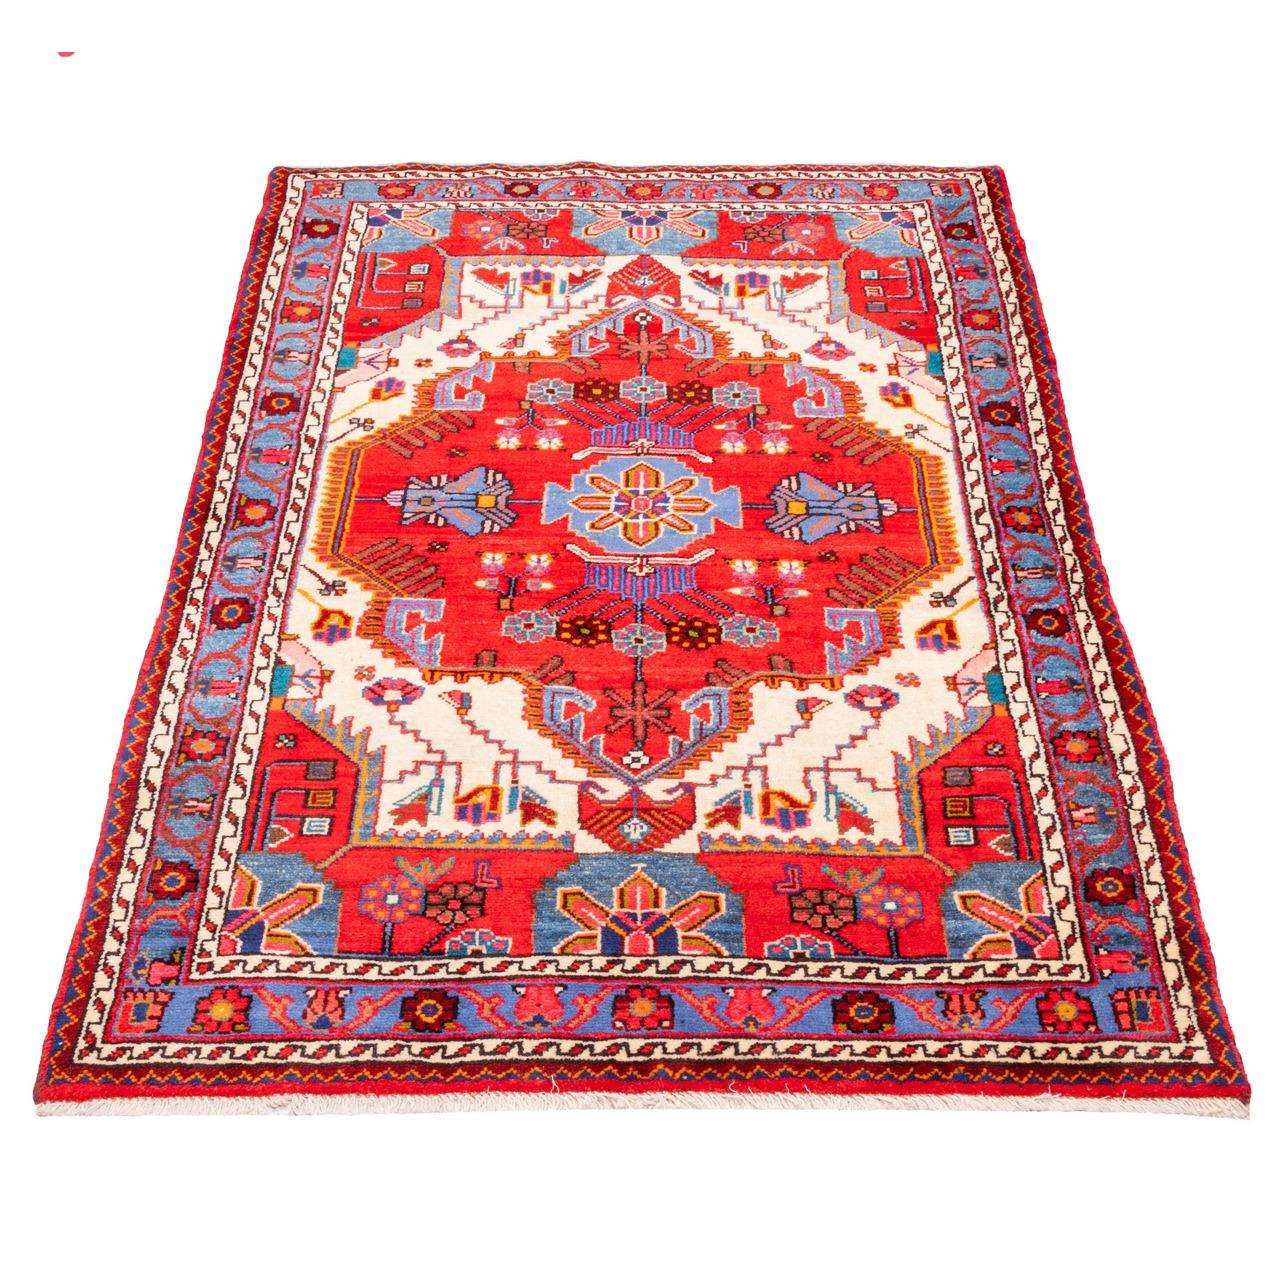 Persia two meter handmade carpet, code 185110